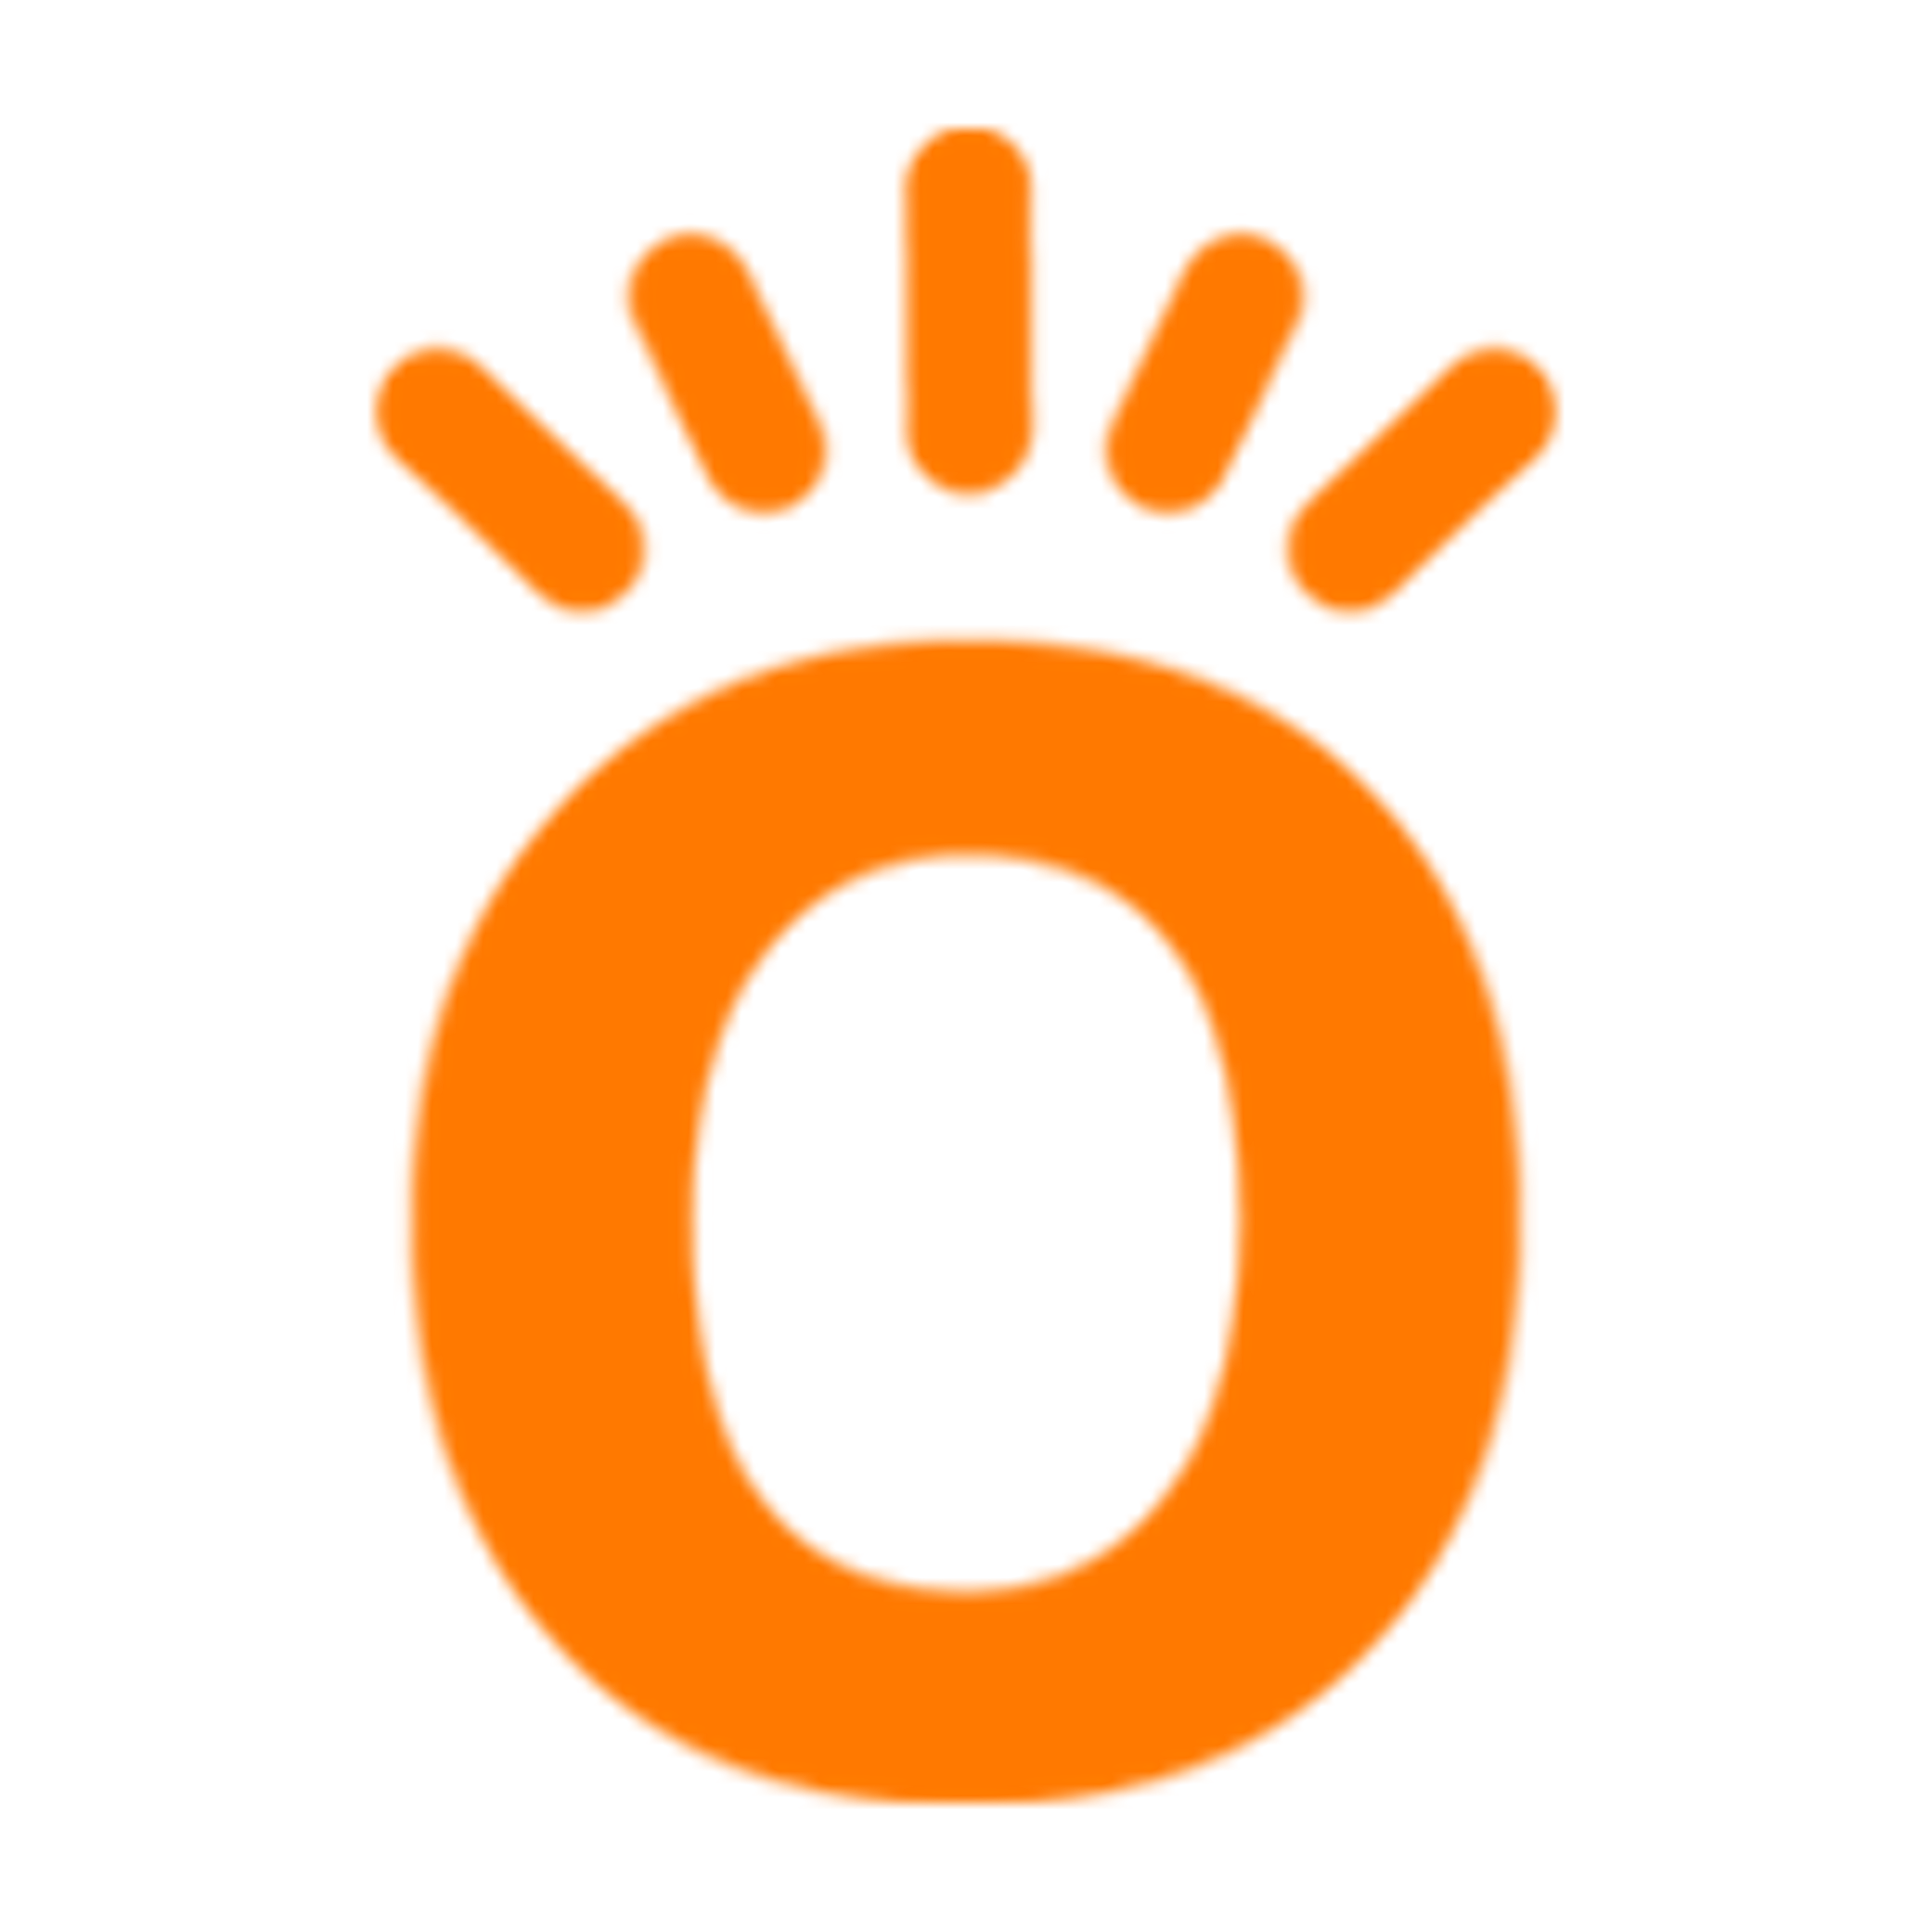 Knowify Logo